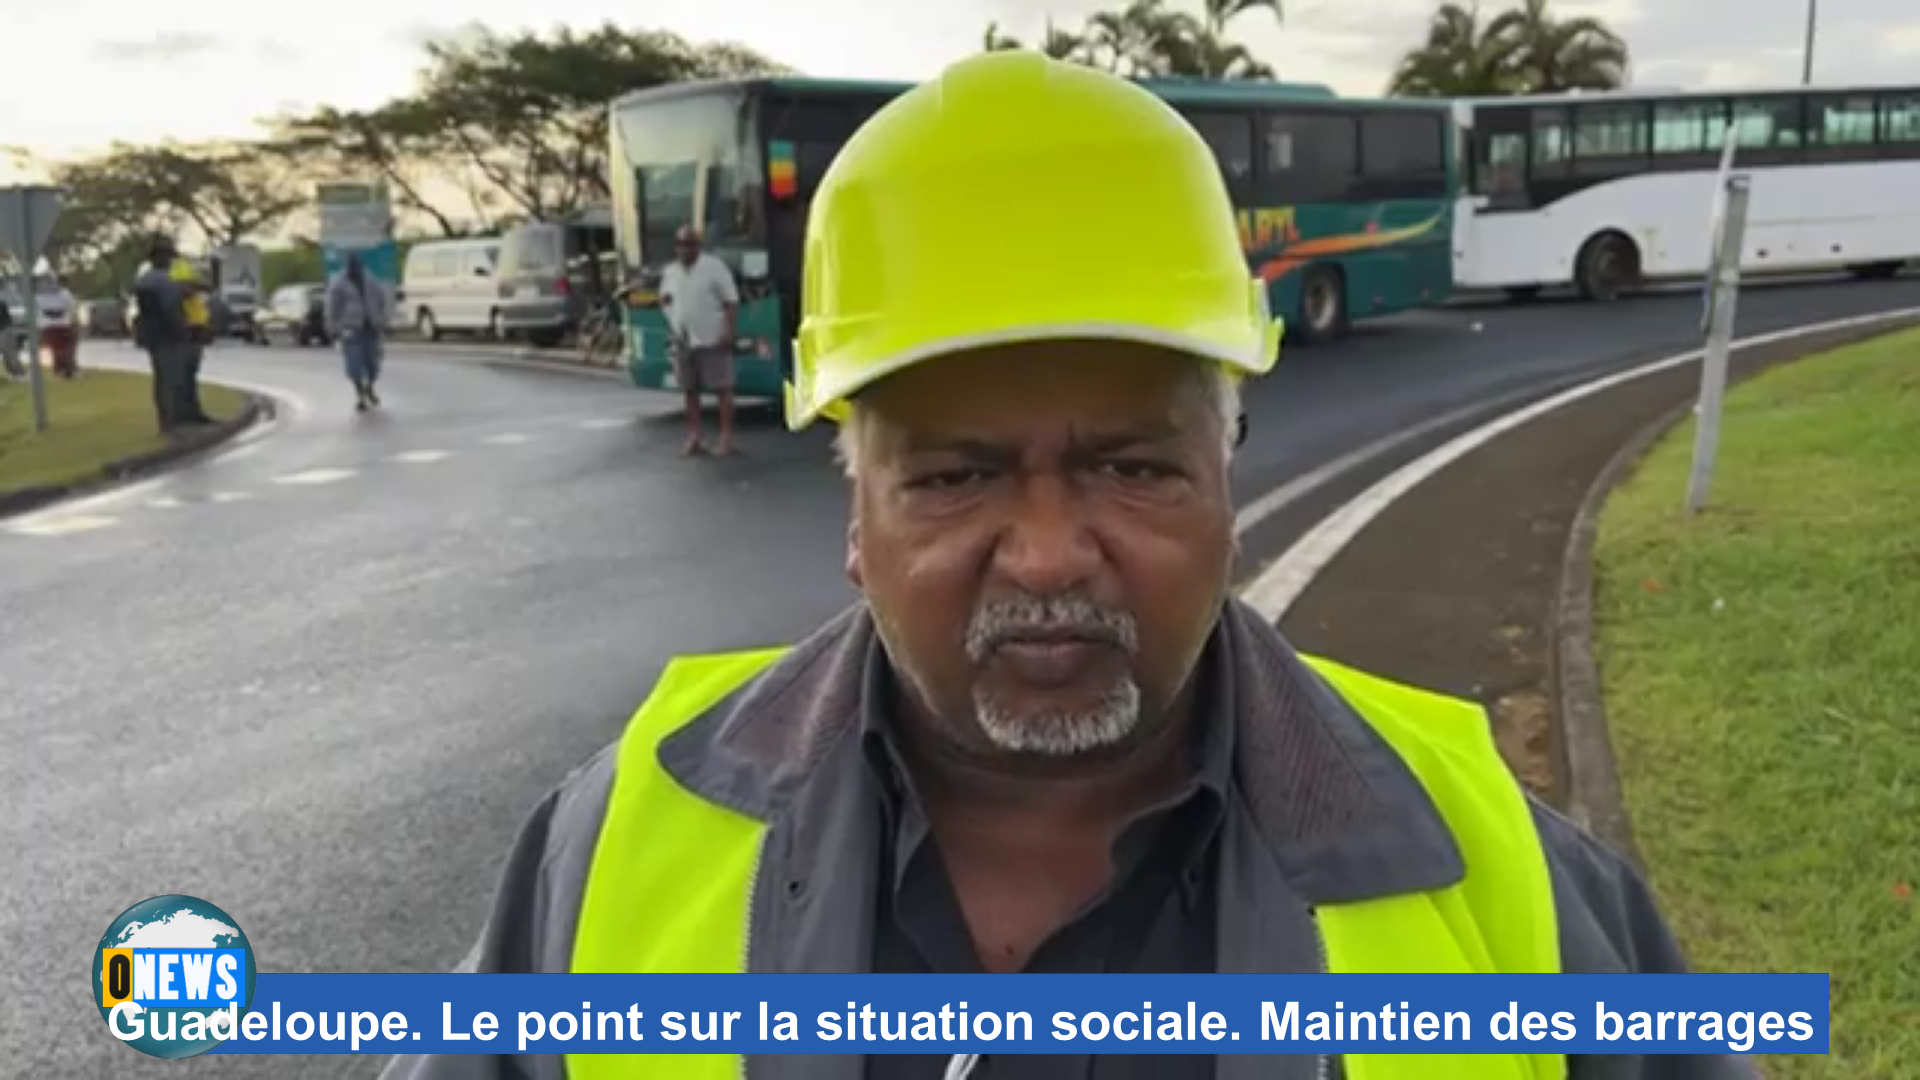 [Vidéo] Onews Guadeloupe. Le point sur la situation sociale. Maintien des barrages (images canal 10)